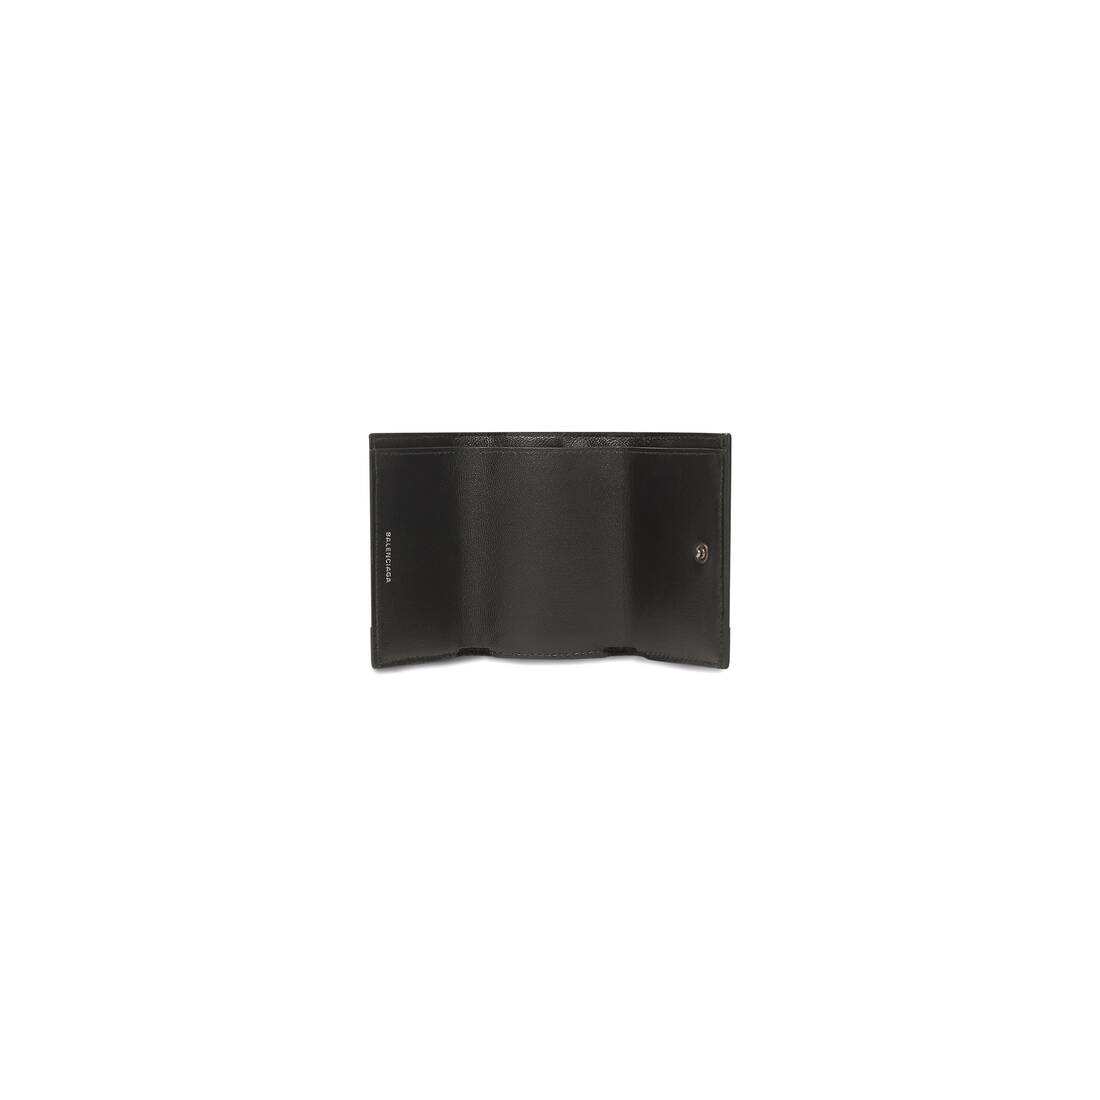 BALENCIAGA Calfskin Hello Kitty Mini Wallet Black 941768